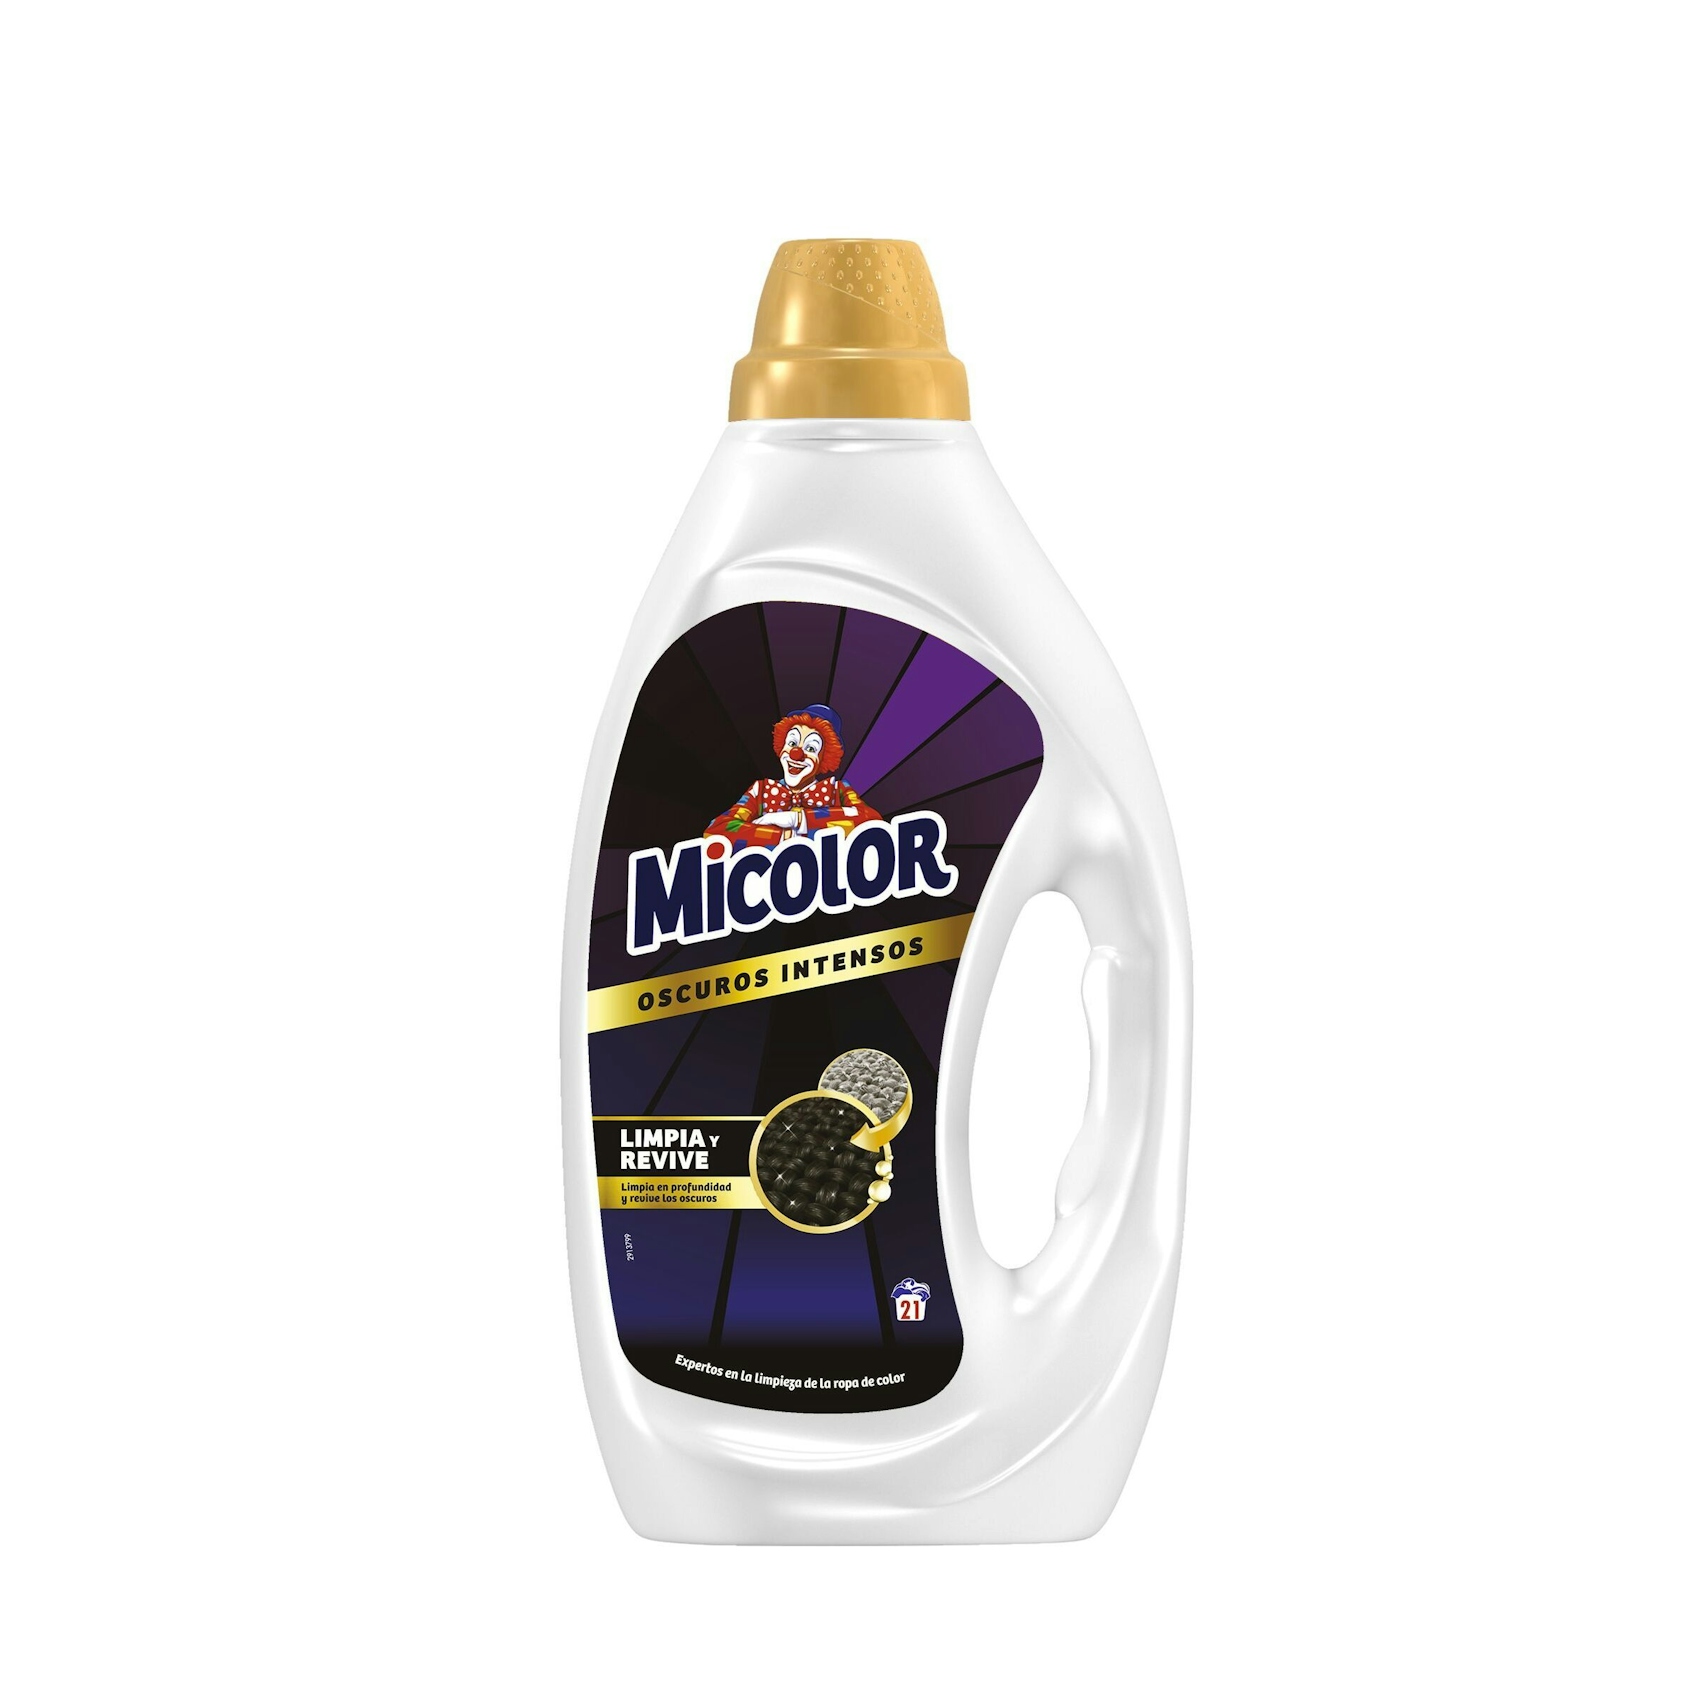 Detergente máquina MICOLOR colores oscuros 21 lv